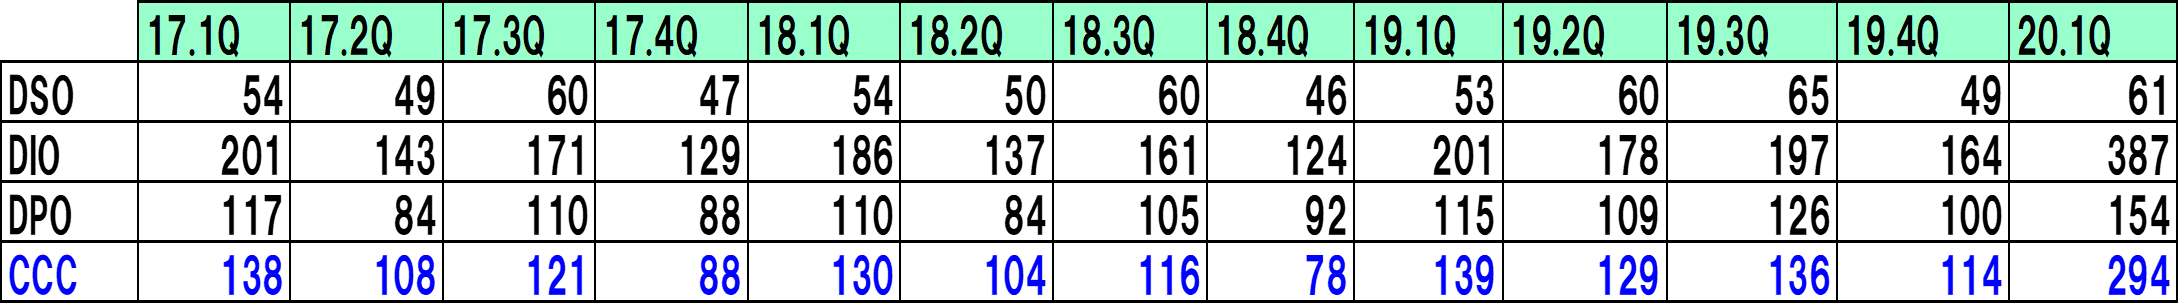 デサントの推移の比較表